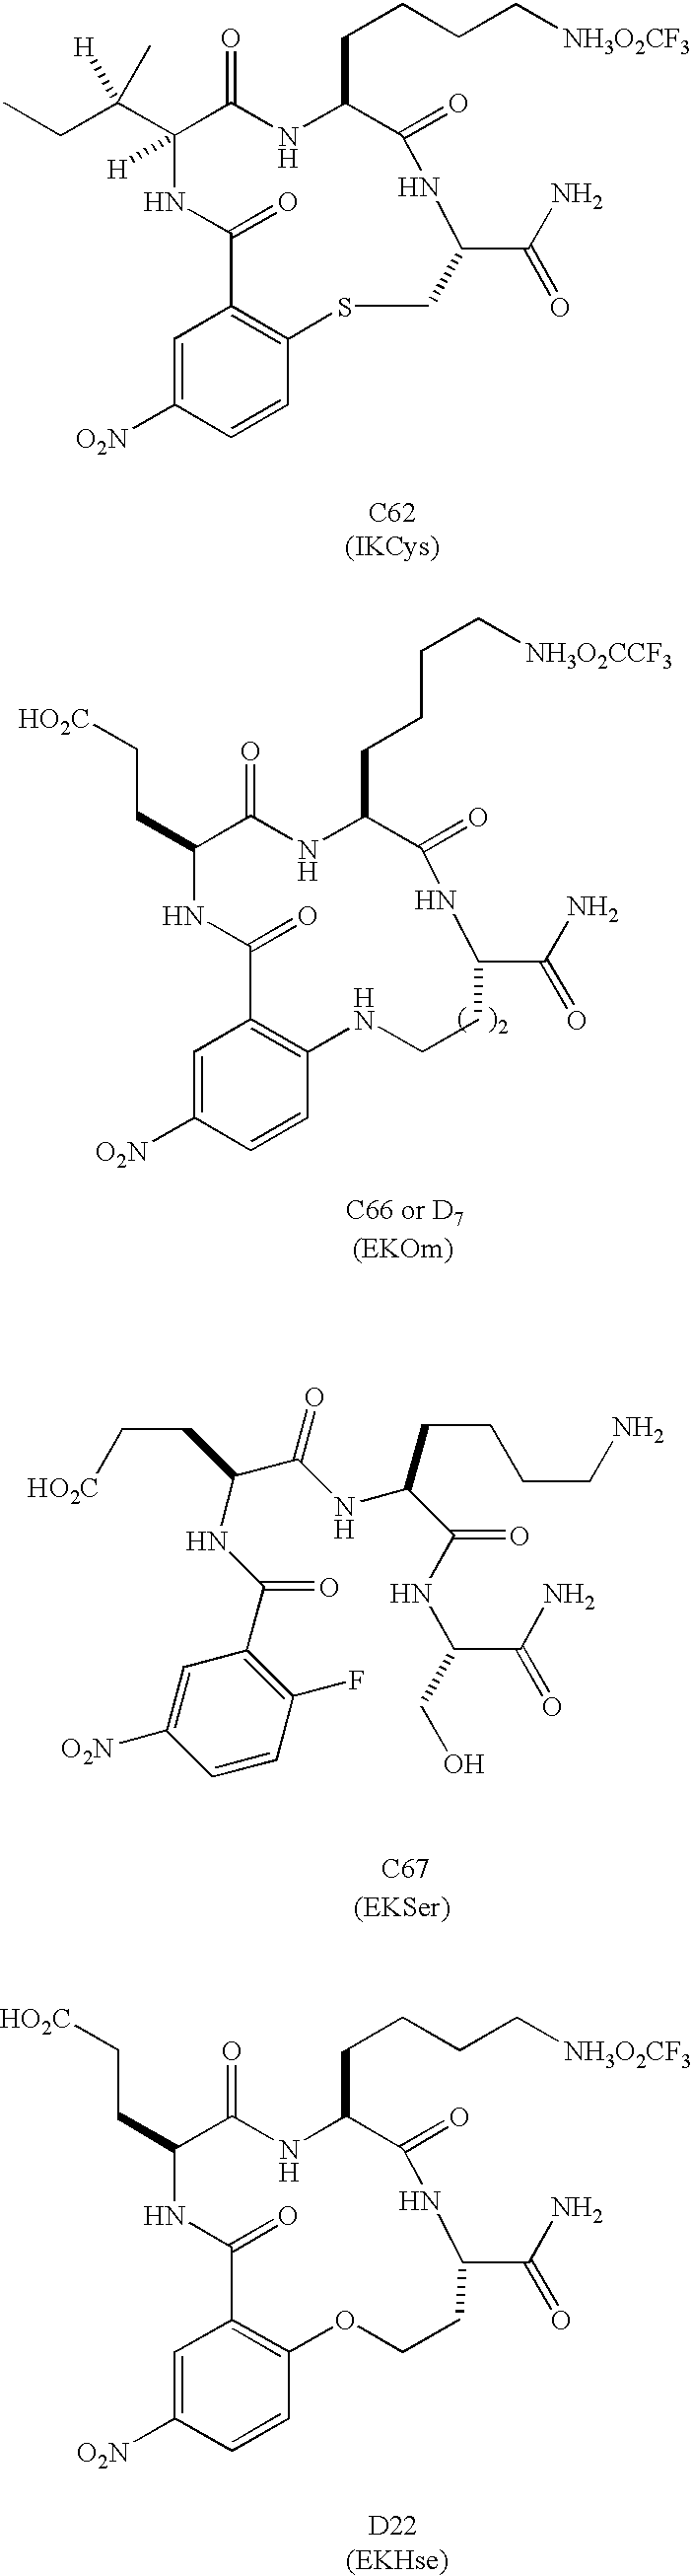 Β-turn peptidomimetic cyclic compounds